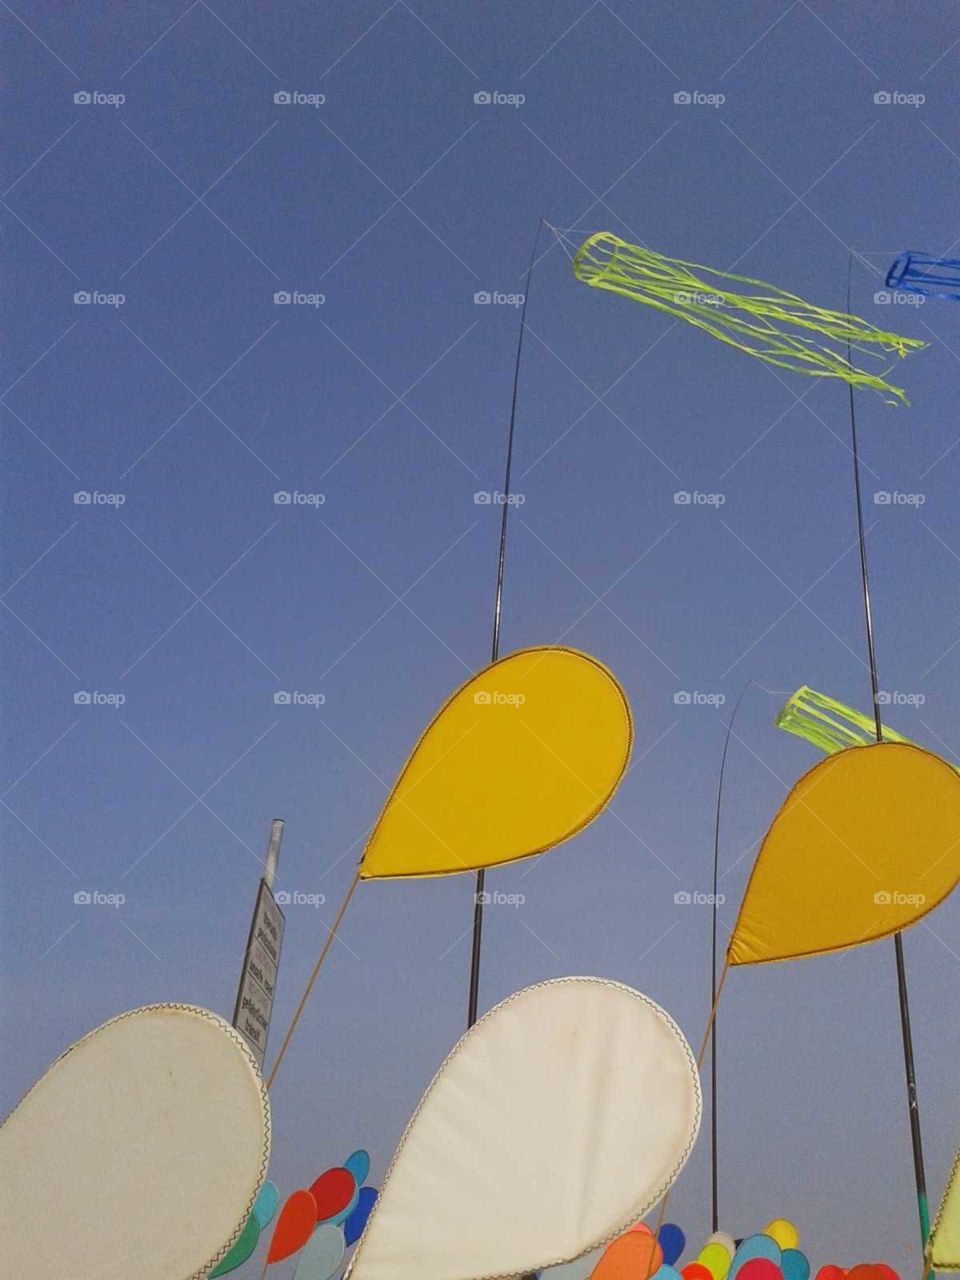 flying kites